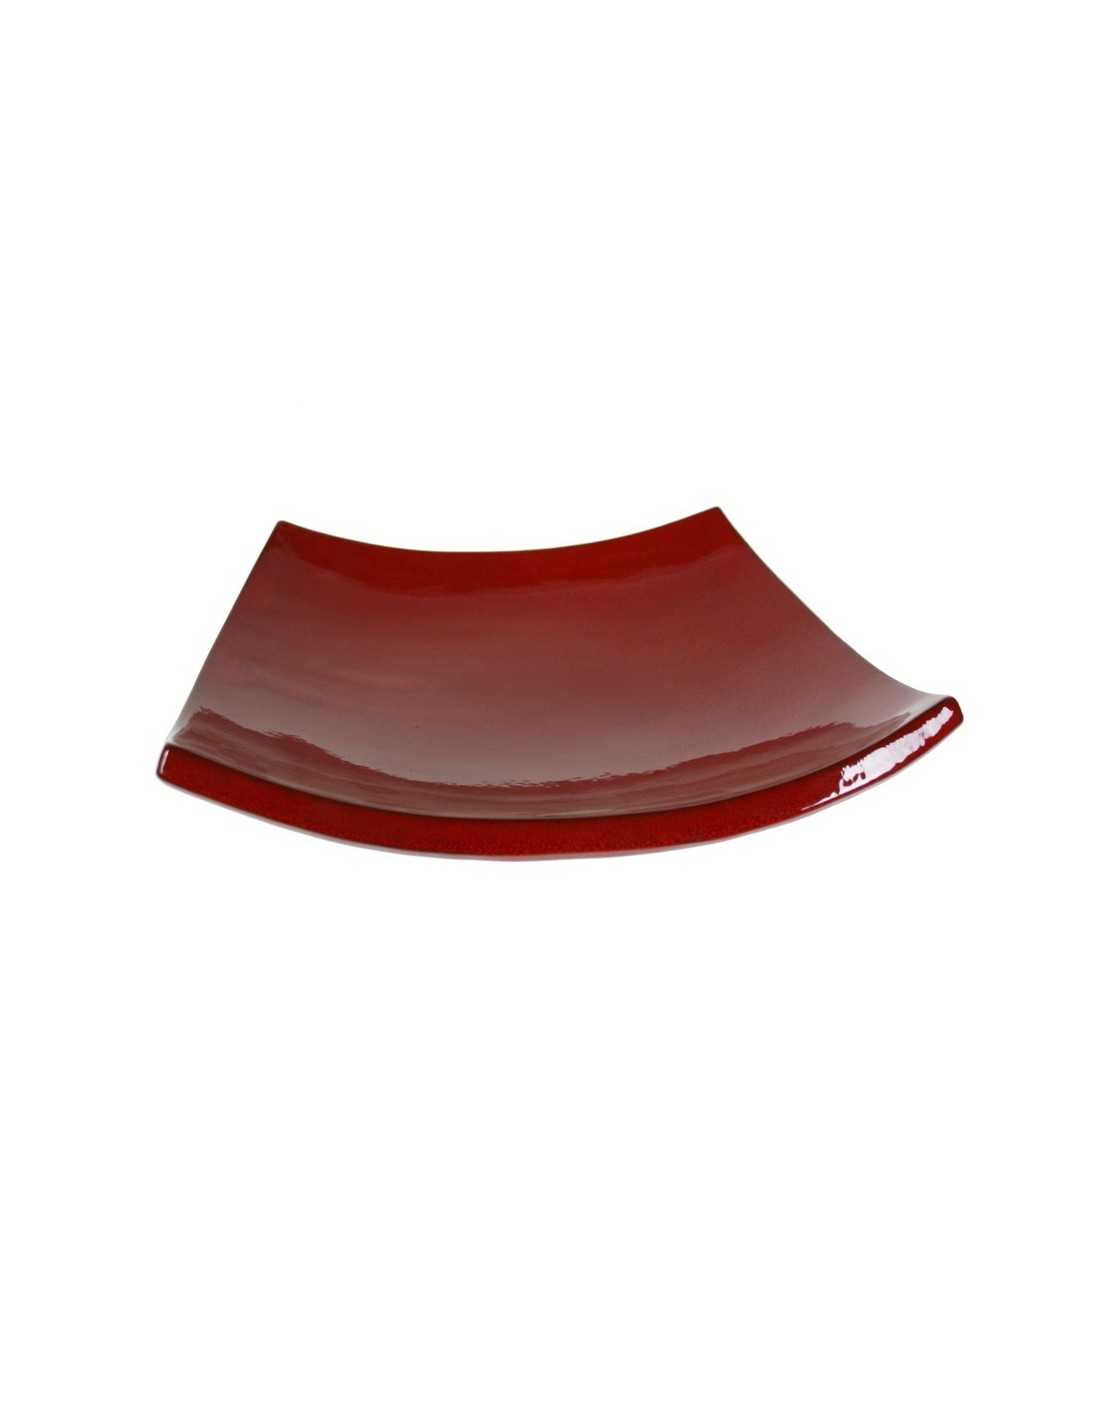 Centro de mesa en cerámica artesanal color rojo